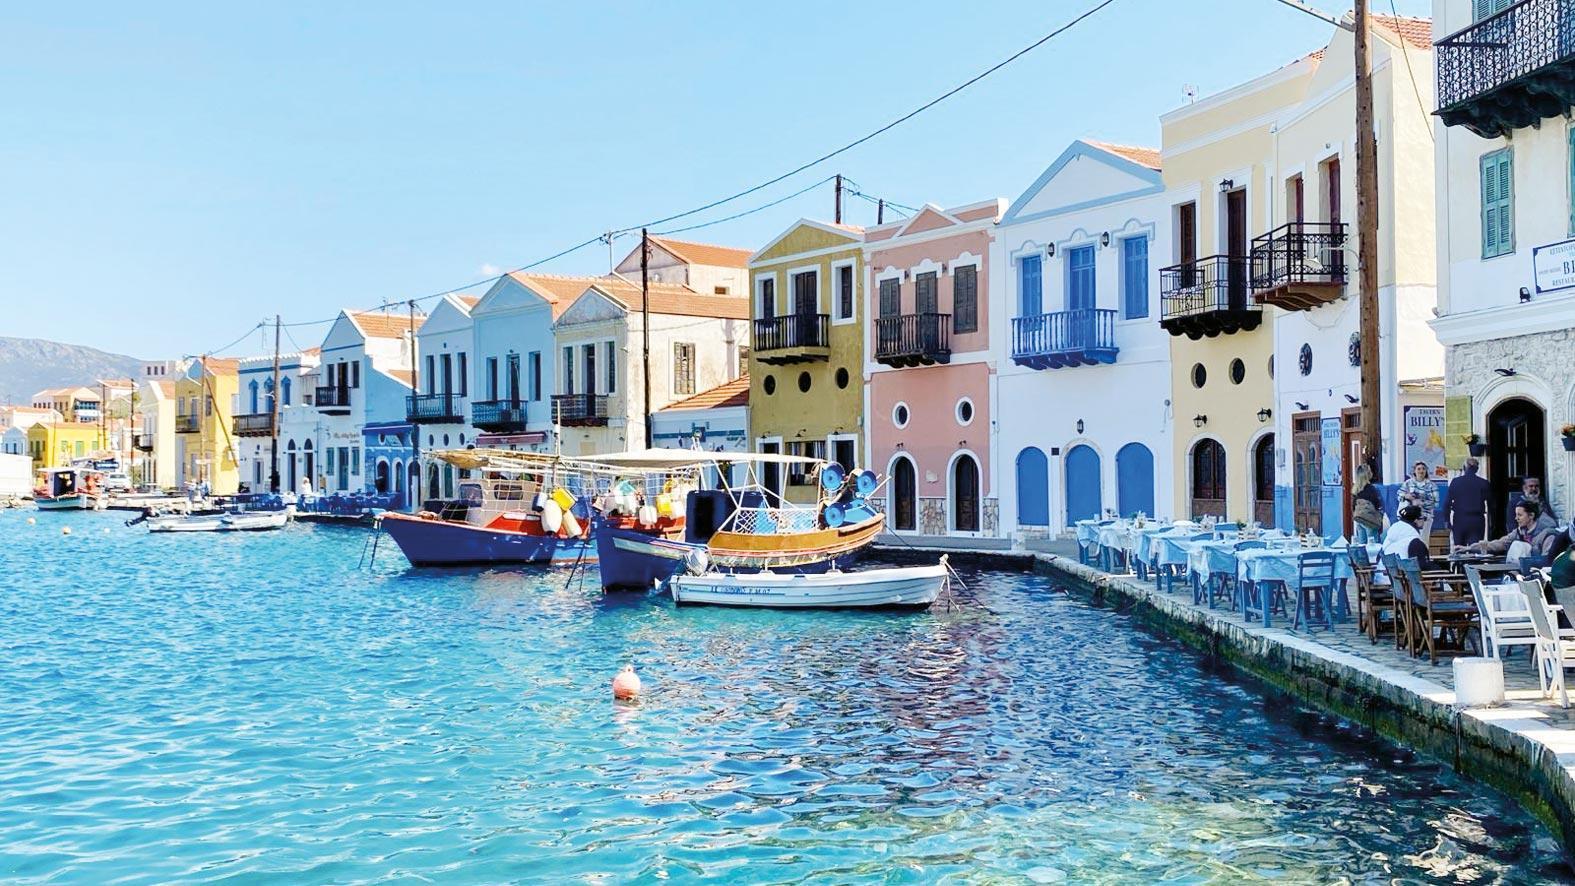 Τα ελληνικά νησιά, που ευνοούνται από τους ξένους τις γιορτές